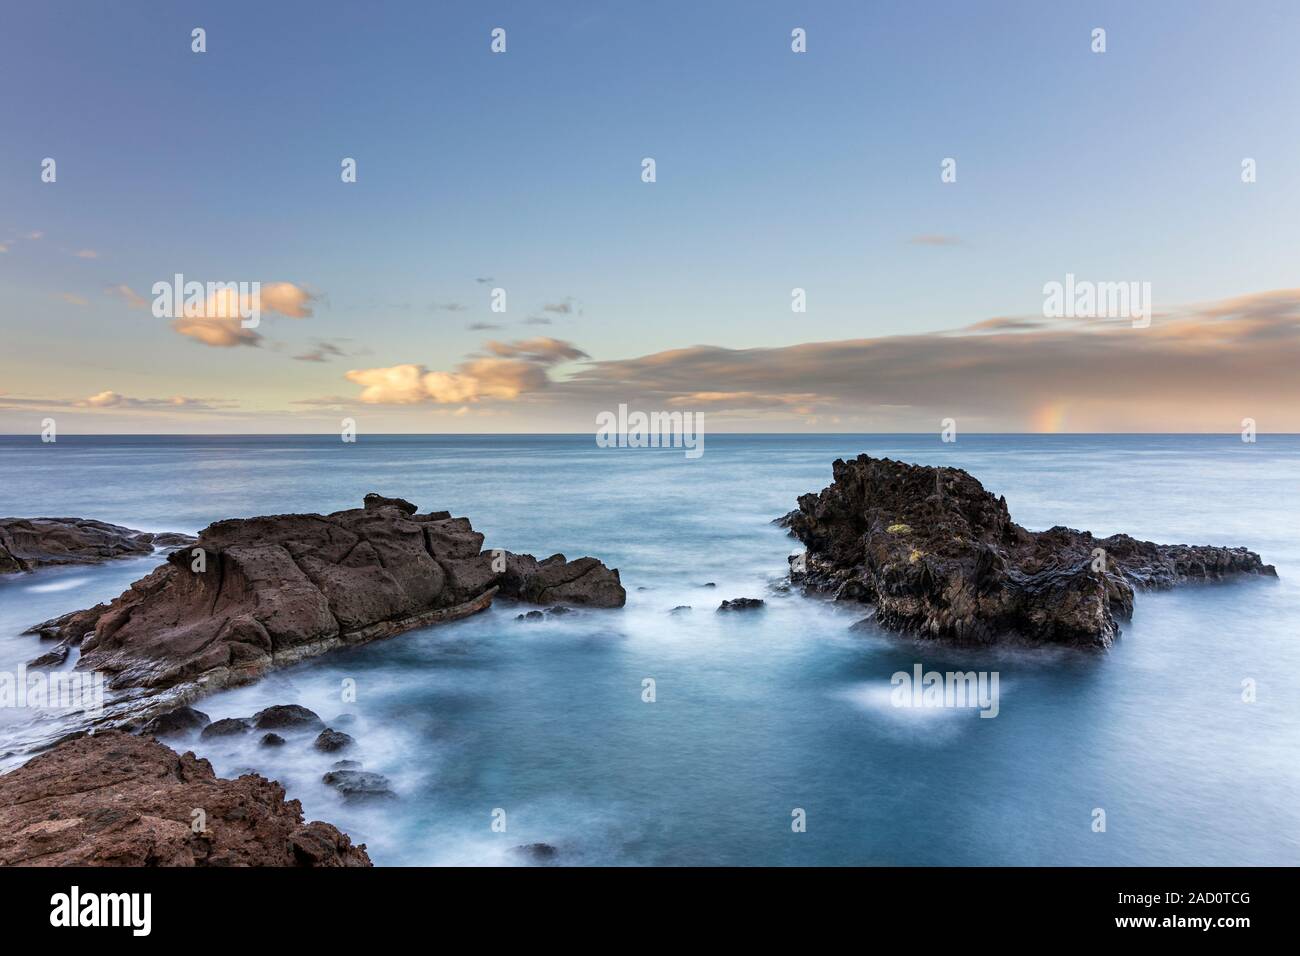 Fotografie con lunghi tempi di esposizione seascape all'alba, Playa Paraiso, Costa Adeje, Tenerife, Isole Canarie, Spagna Foto Stock